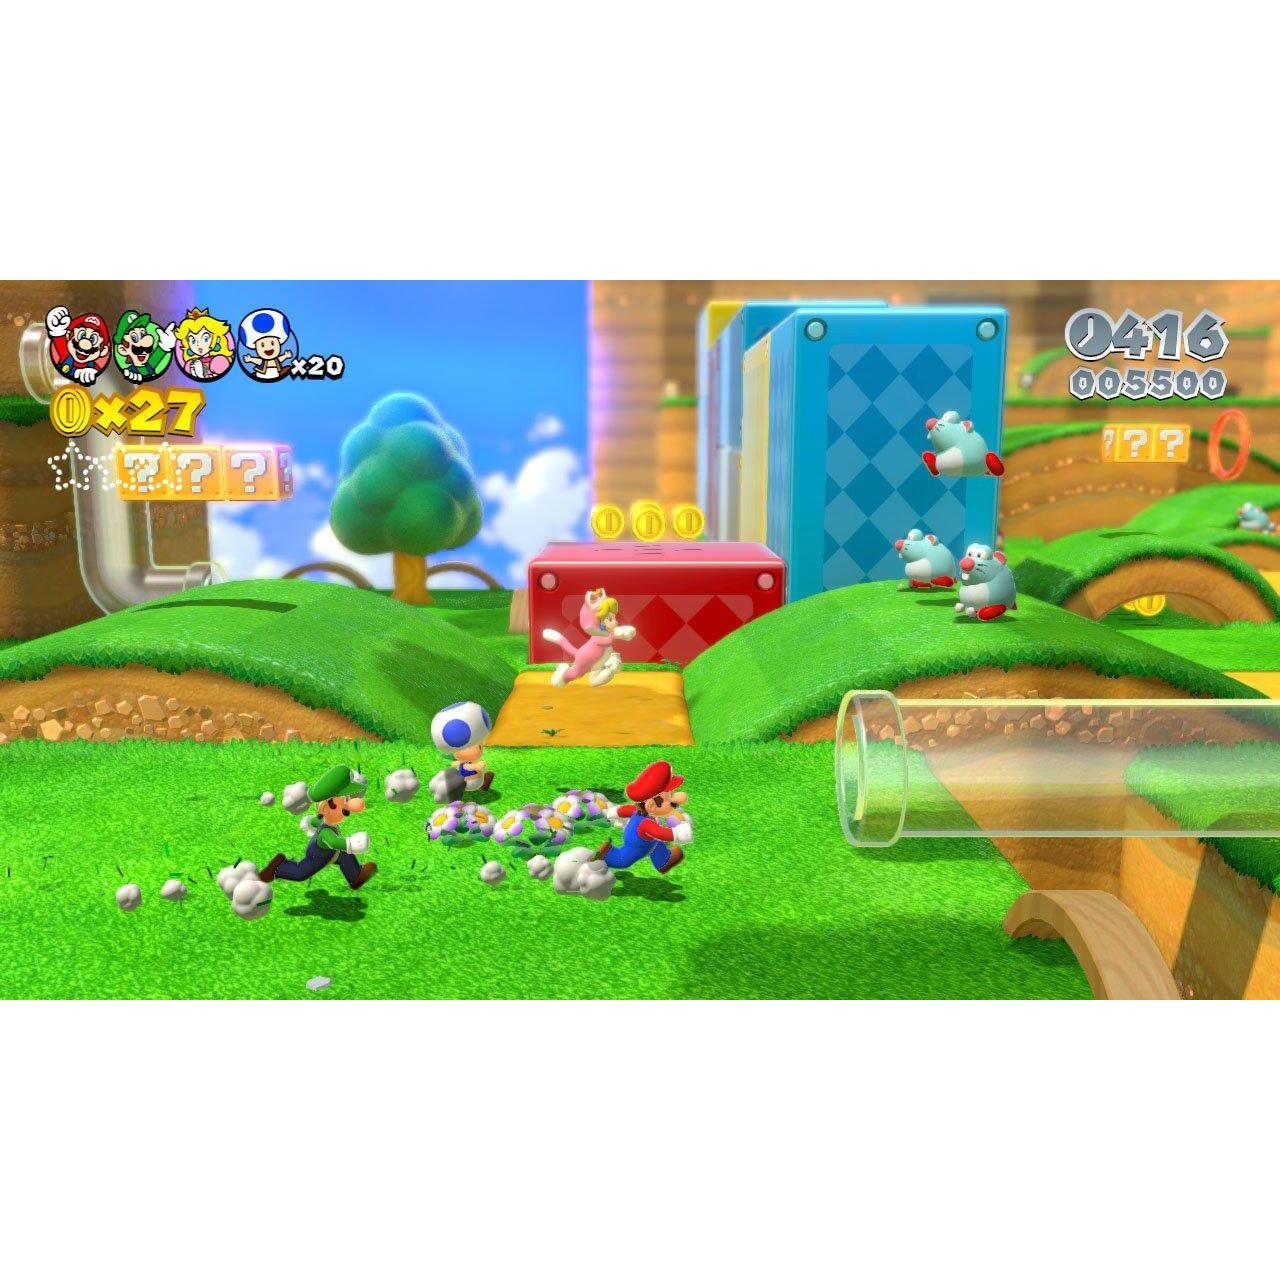 Super Mario 3D World Wii (Wii kopen - €26.99